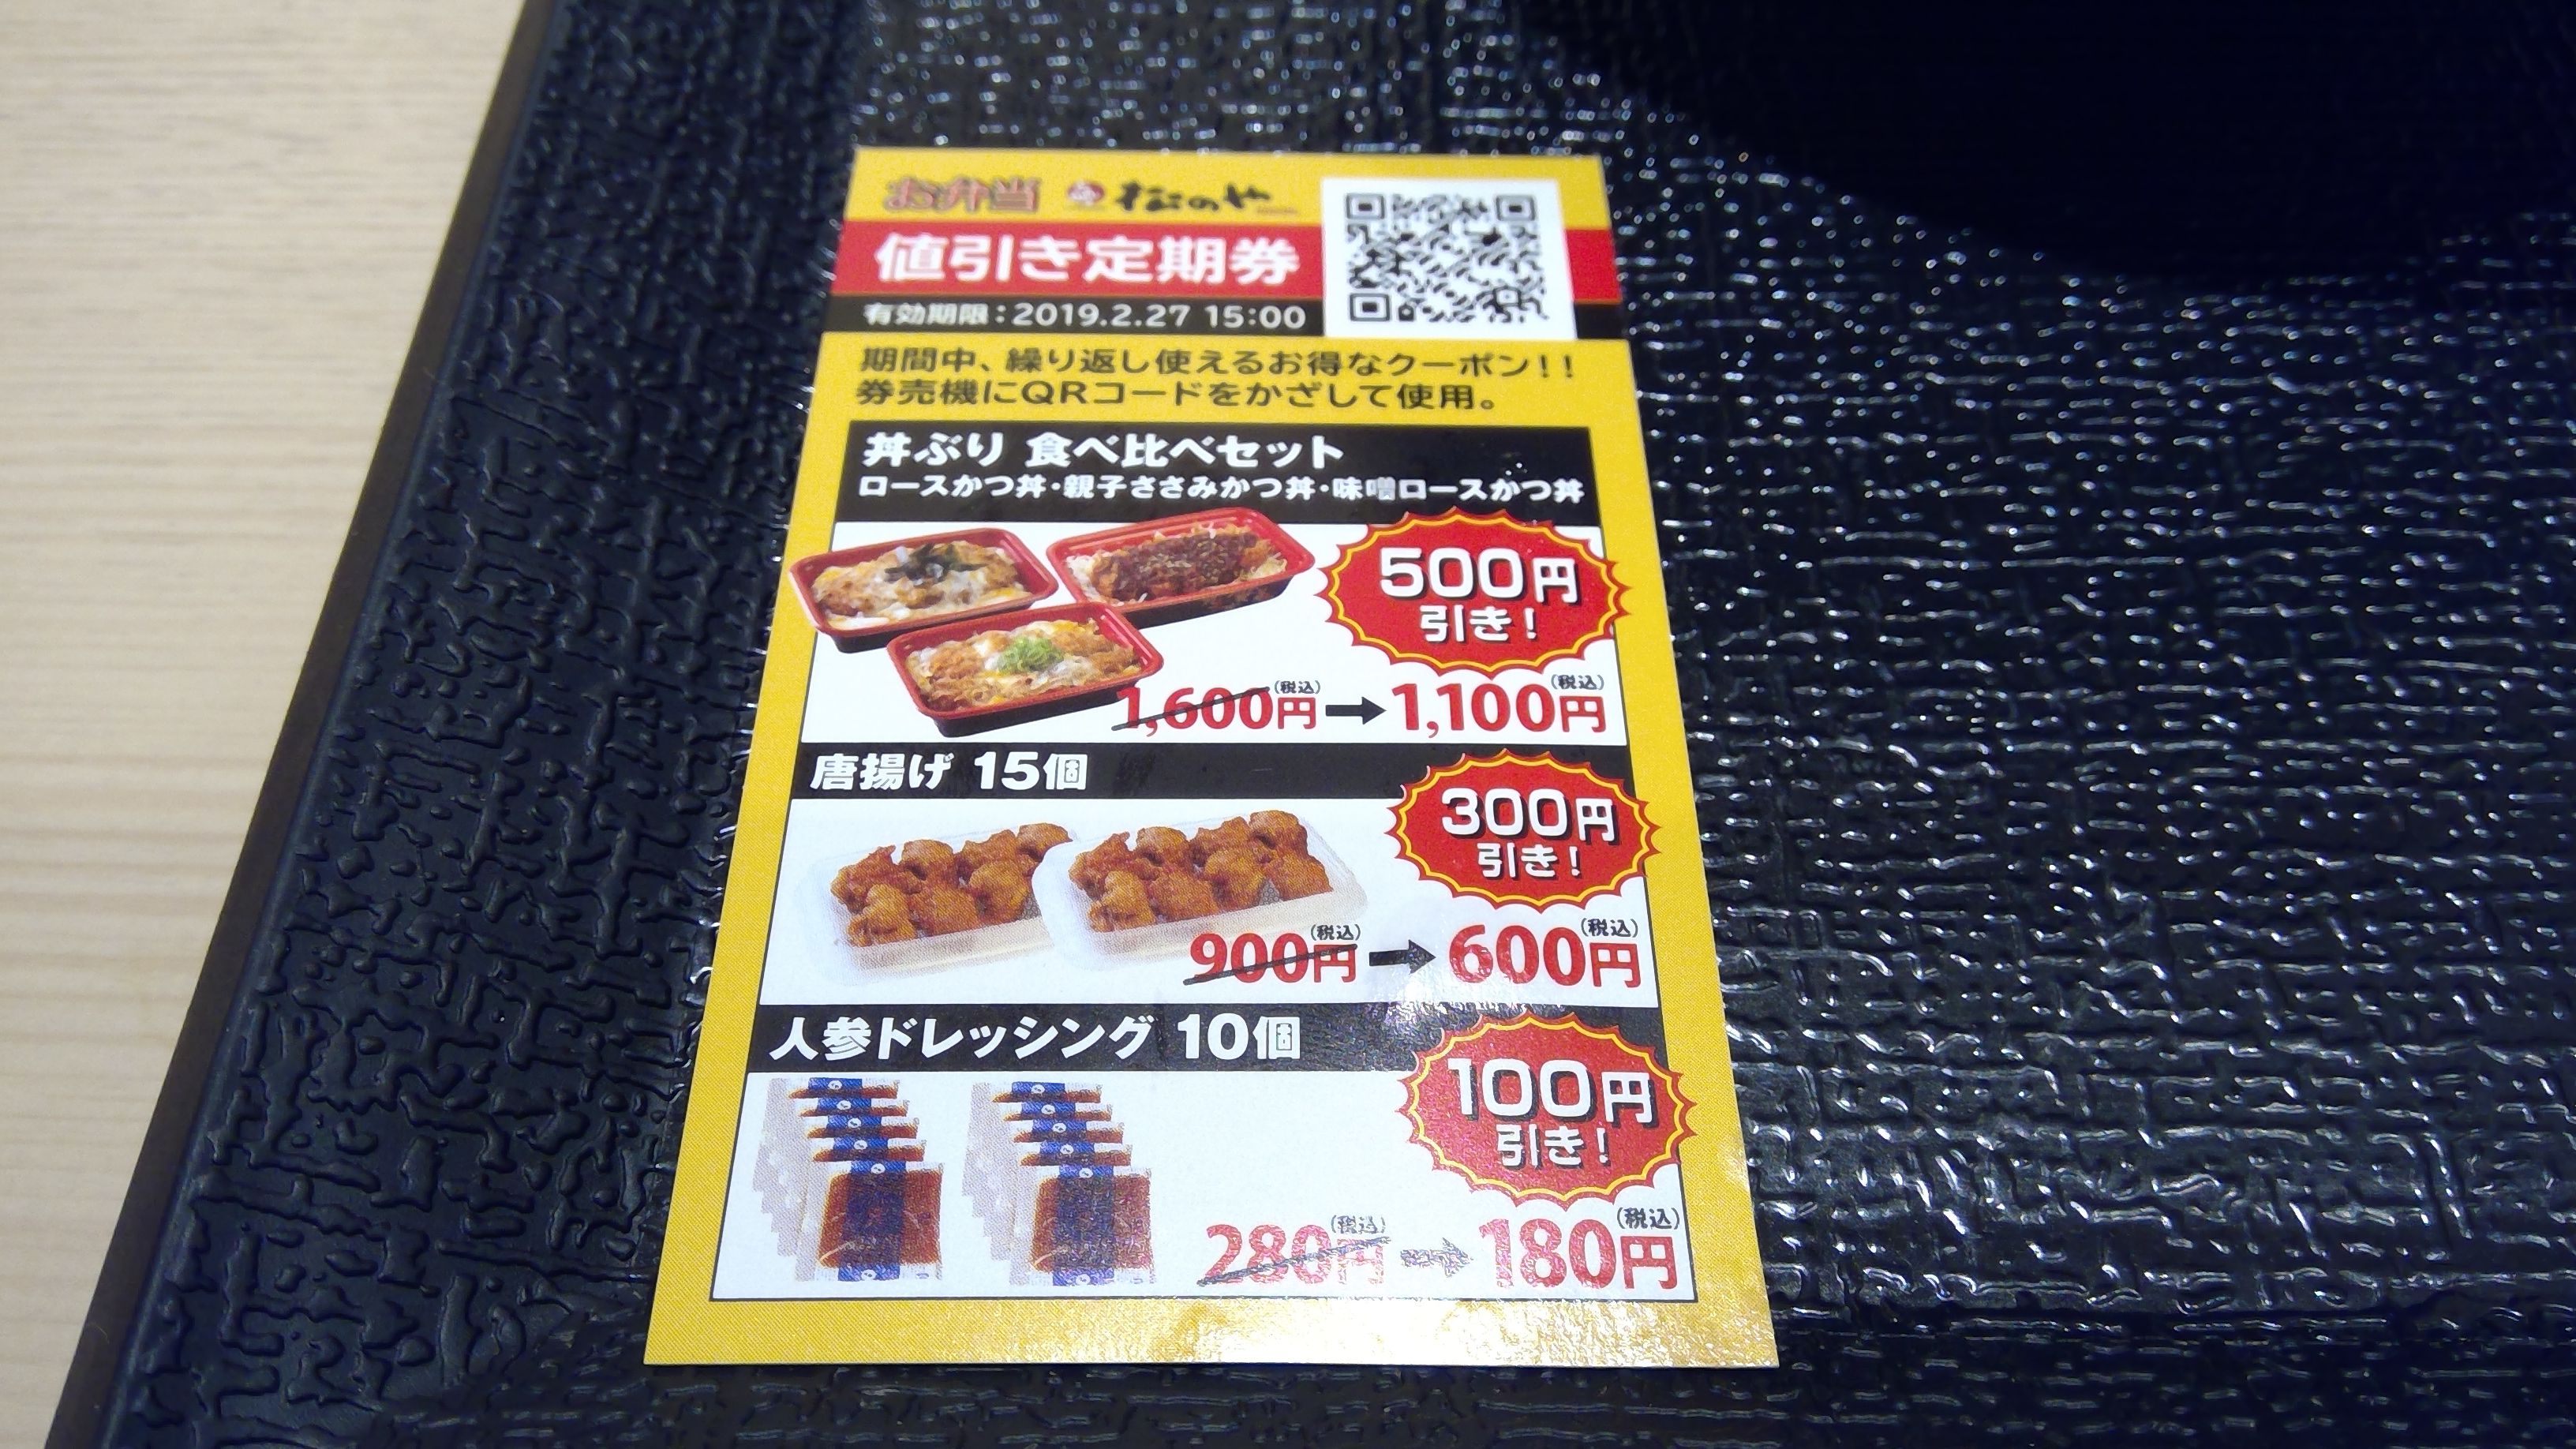 や 松 クーポン の 松屋フーズ、とんかつ店「松のや」で使えるモバイルクーポンを提供開始: 日本経済新聞